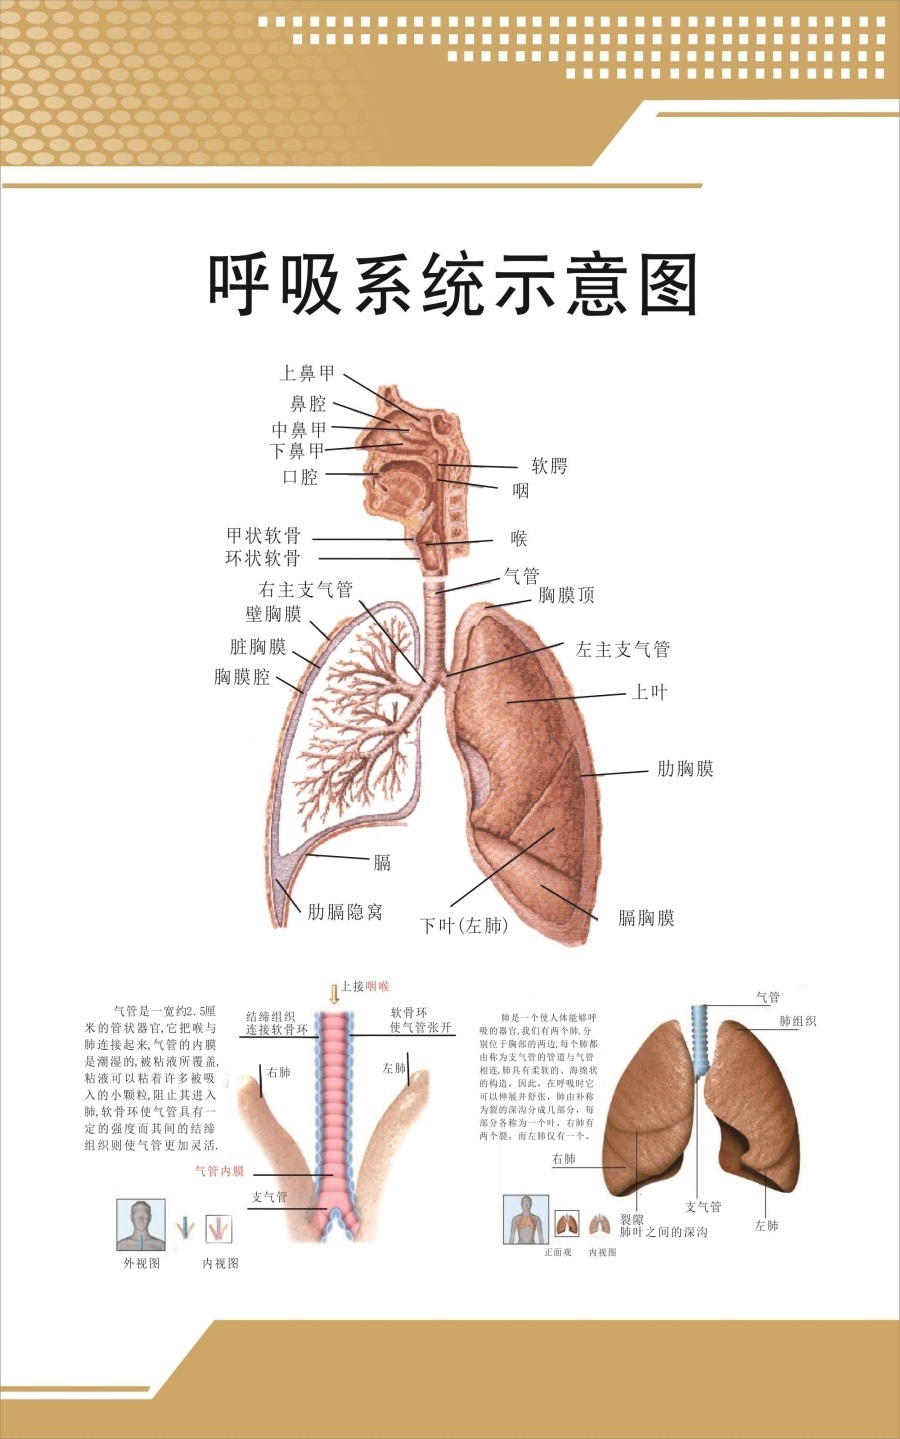 心脏系统示意图人体内脏结构图医院内科消化系统解剖教学宣传海报